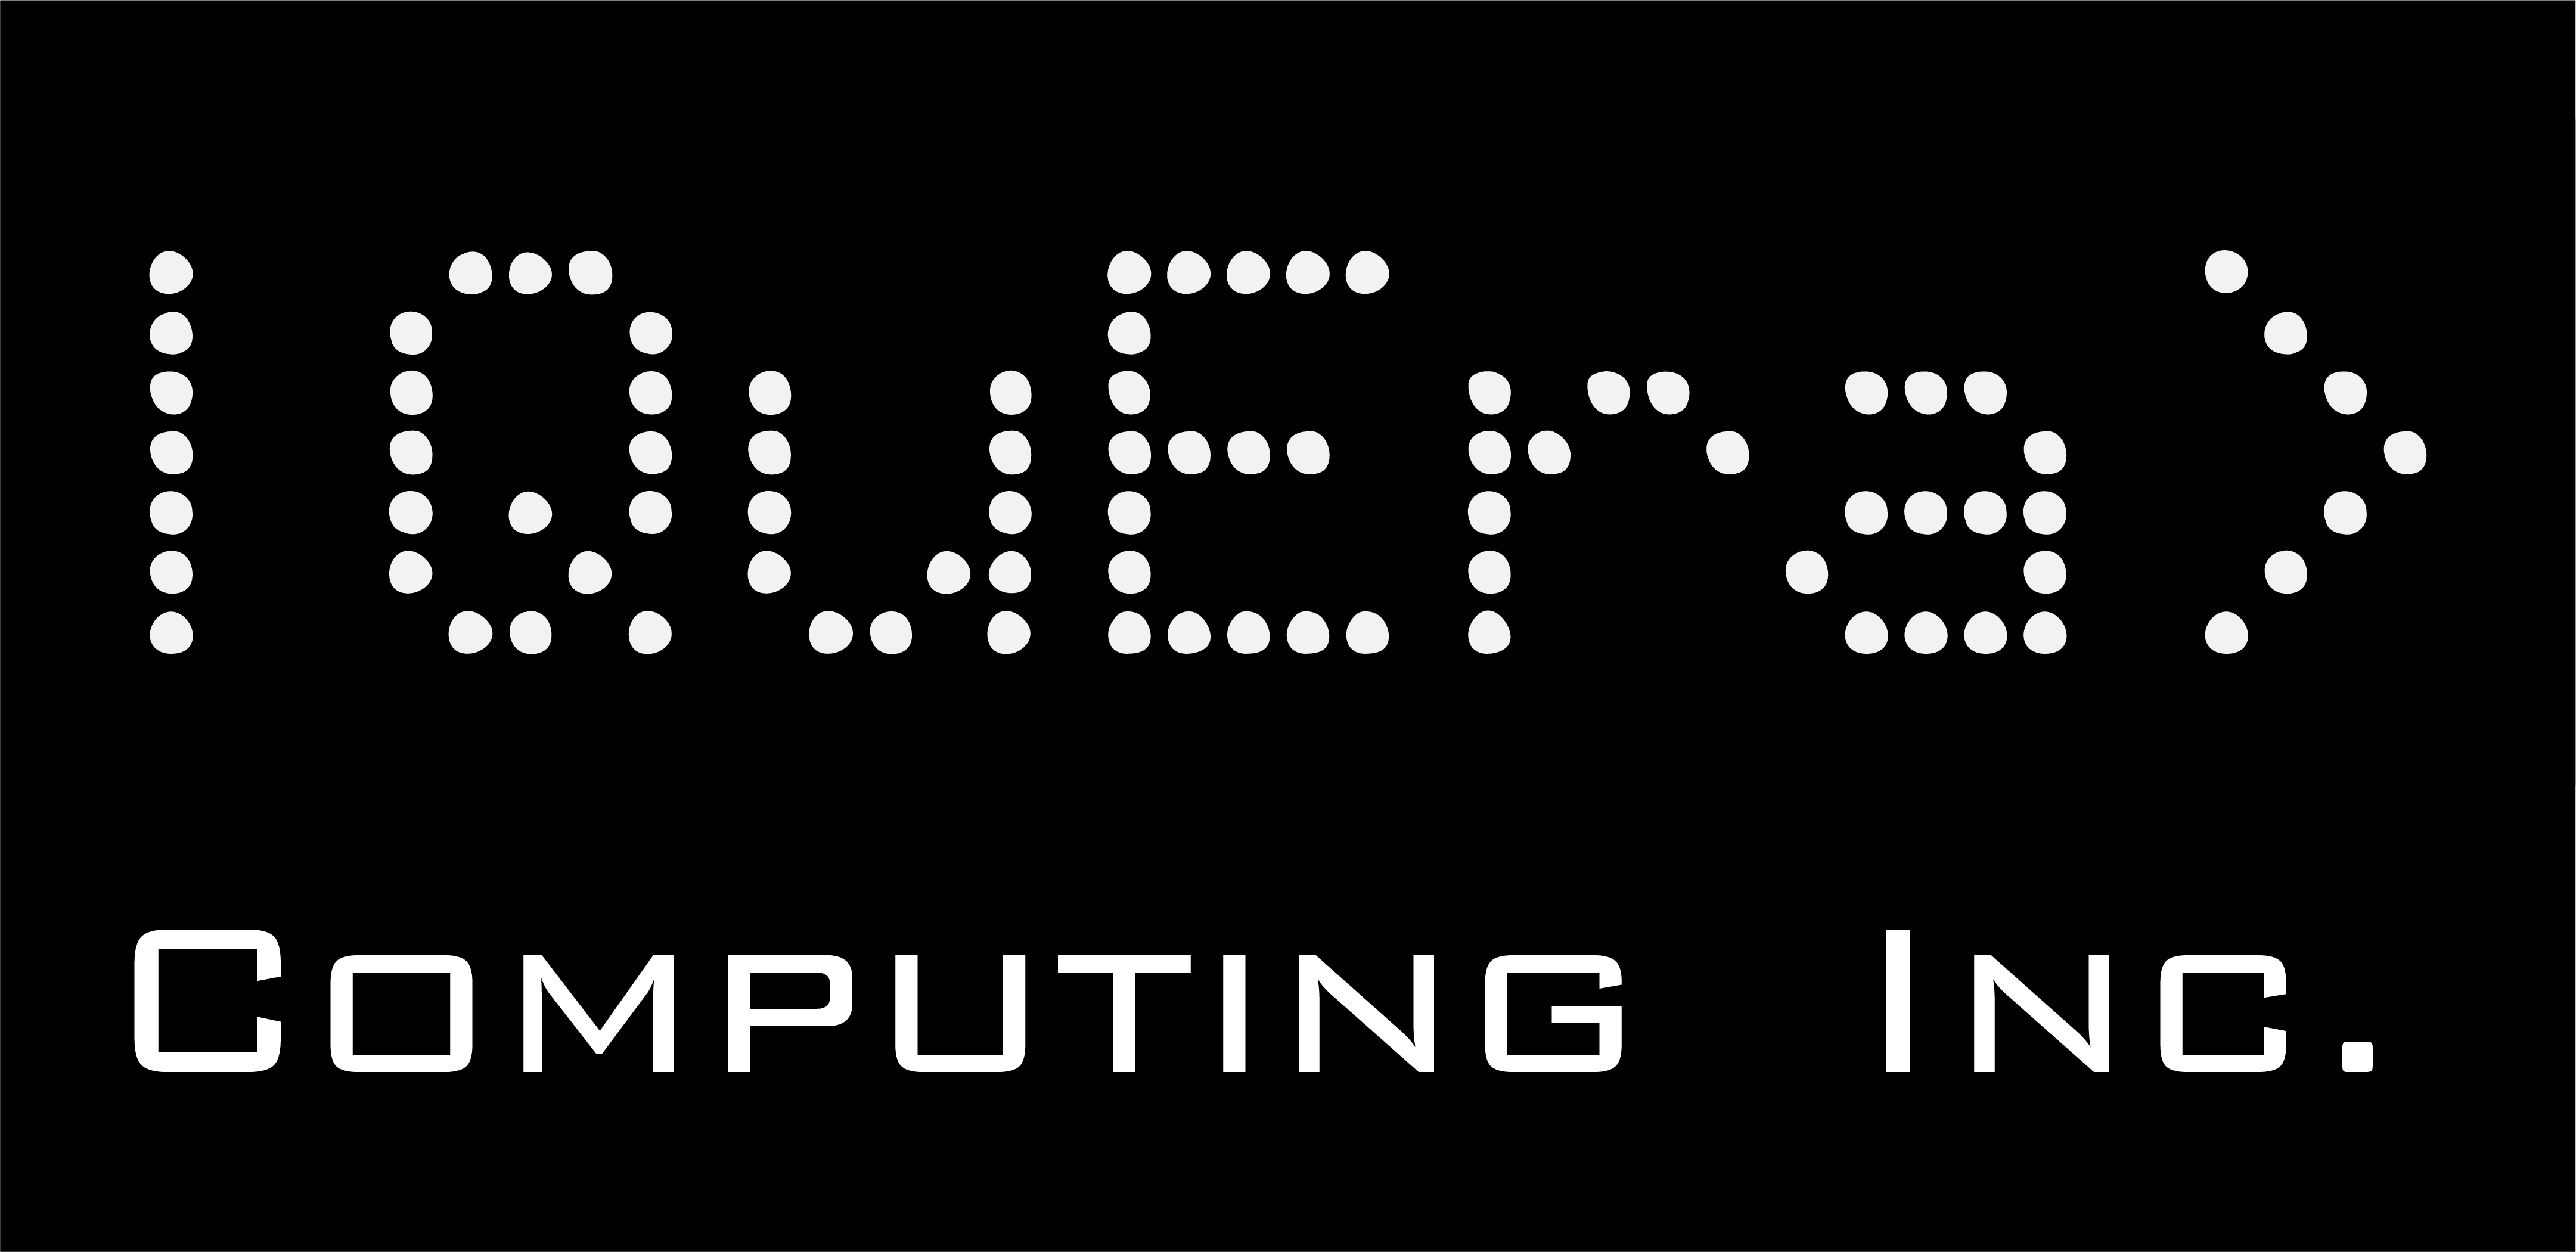 QuEra Computing muncul secara diam-diam dengan $17 juta untuk meluncurkan perangkat kuantum ...